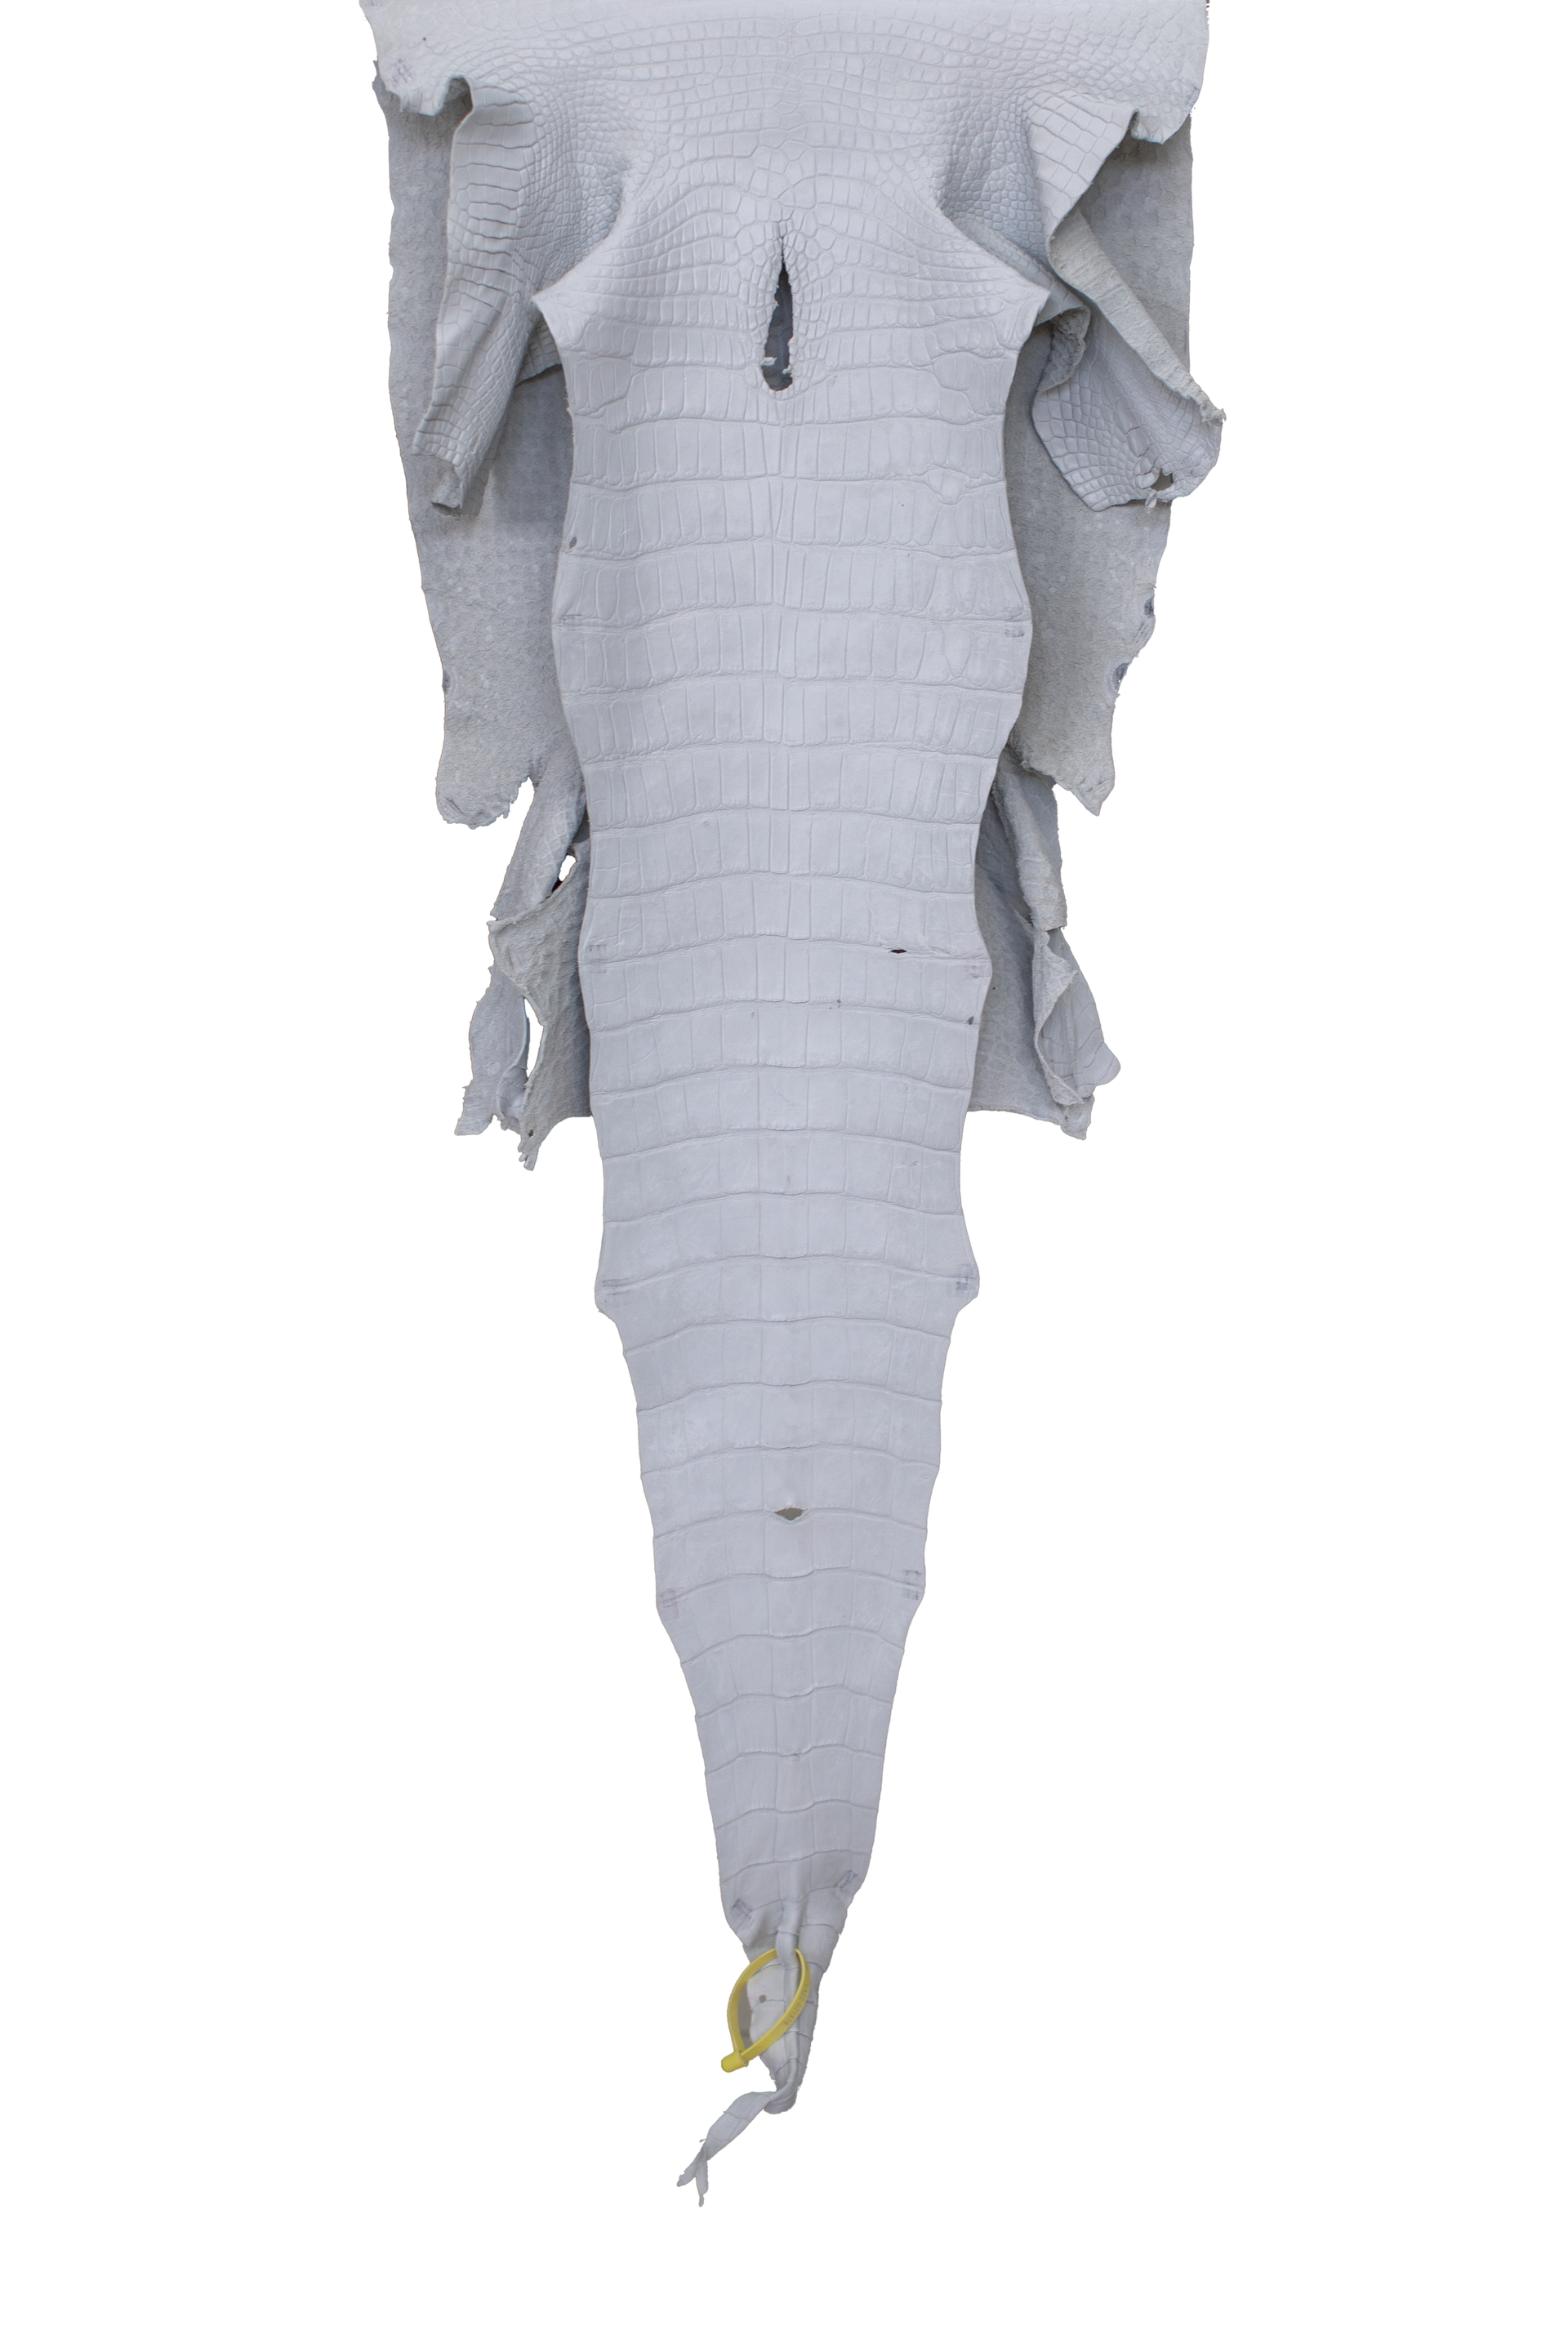 46 cm Grade 4/5 White Matte Wild American Alligator Leather - Tag: LA22-0021516